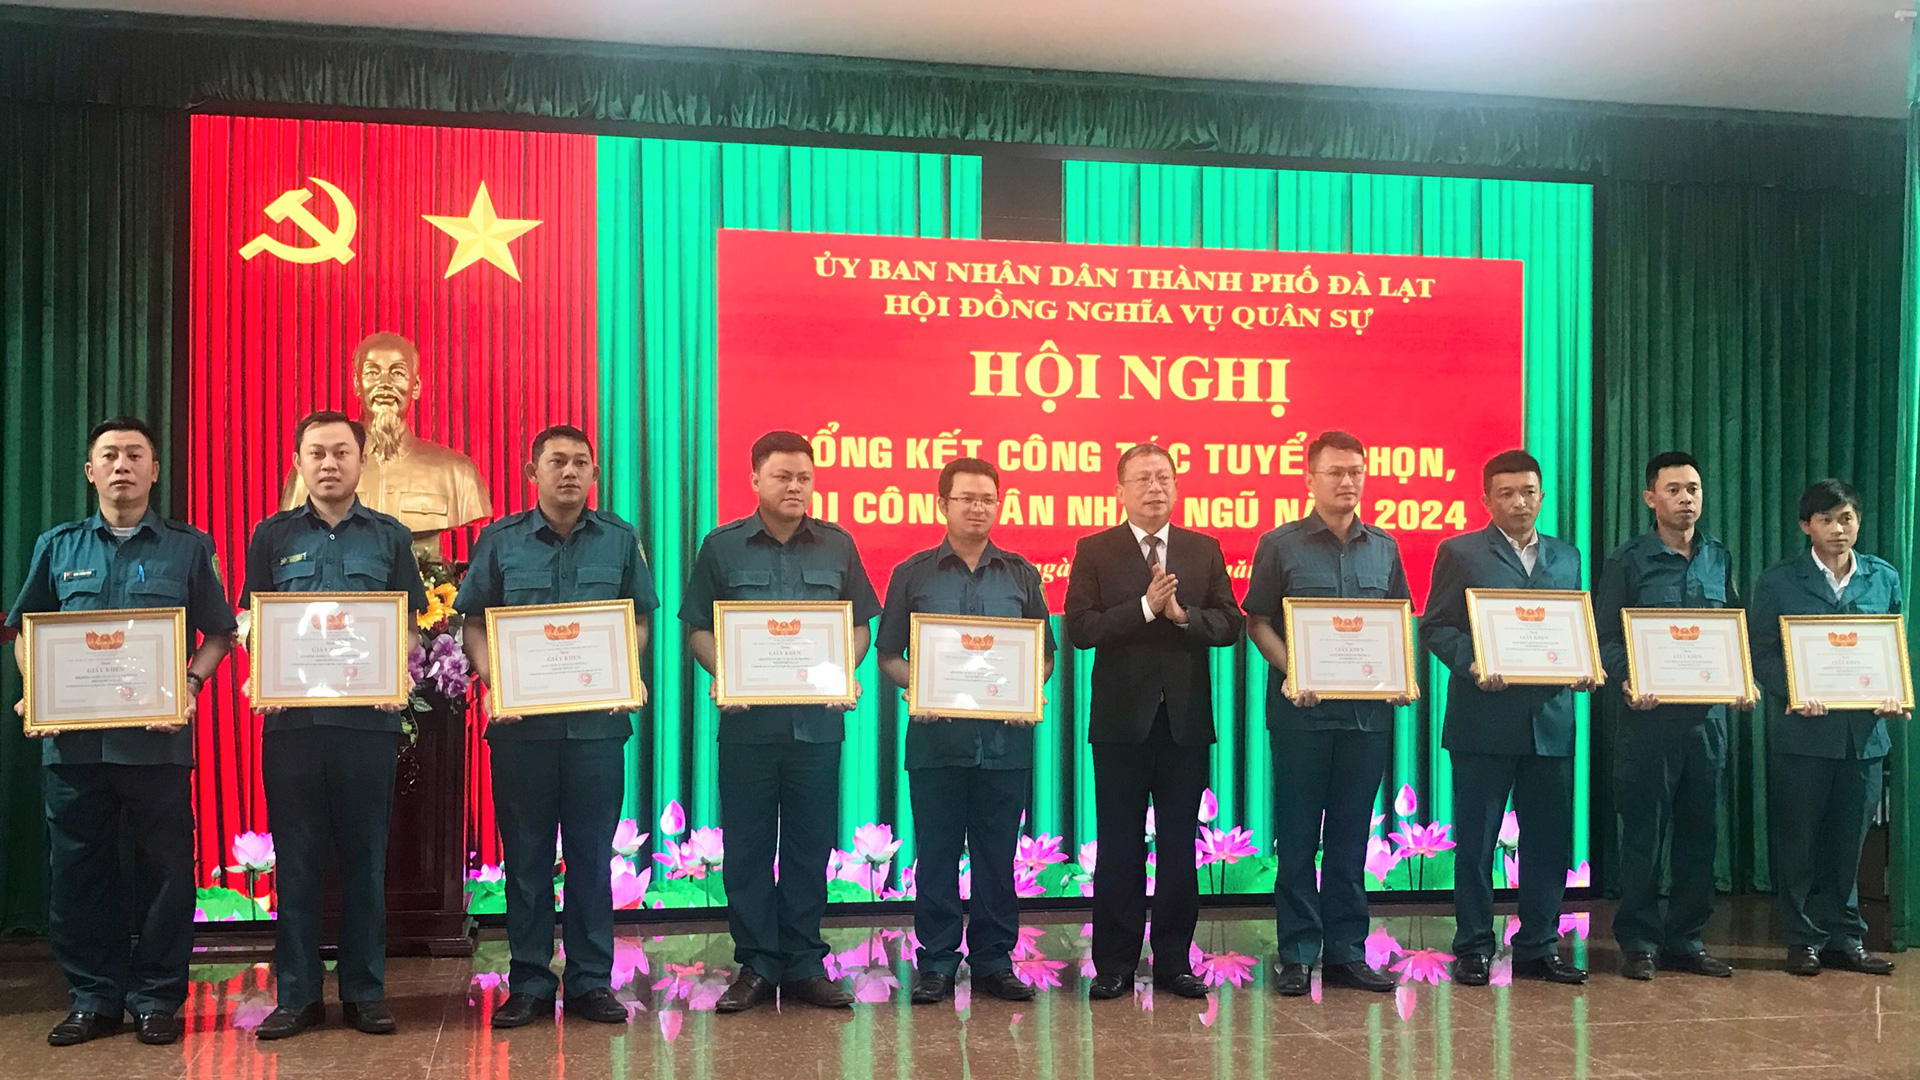 Ông Võ Ngọc Trình - Phó Chủ tịch UBND TP Đà Lạt trao giấy khen của Chủ tịch UBND TP Đà Lạt cho các tập thể có thành tích xuất sắc trong công tác tuyển chọn và gọi công dân nhập ngũ năm 2024 